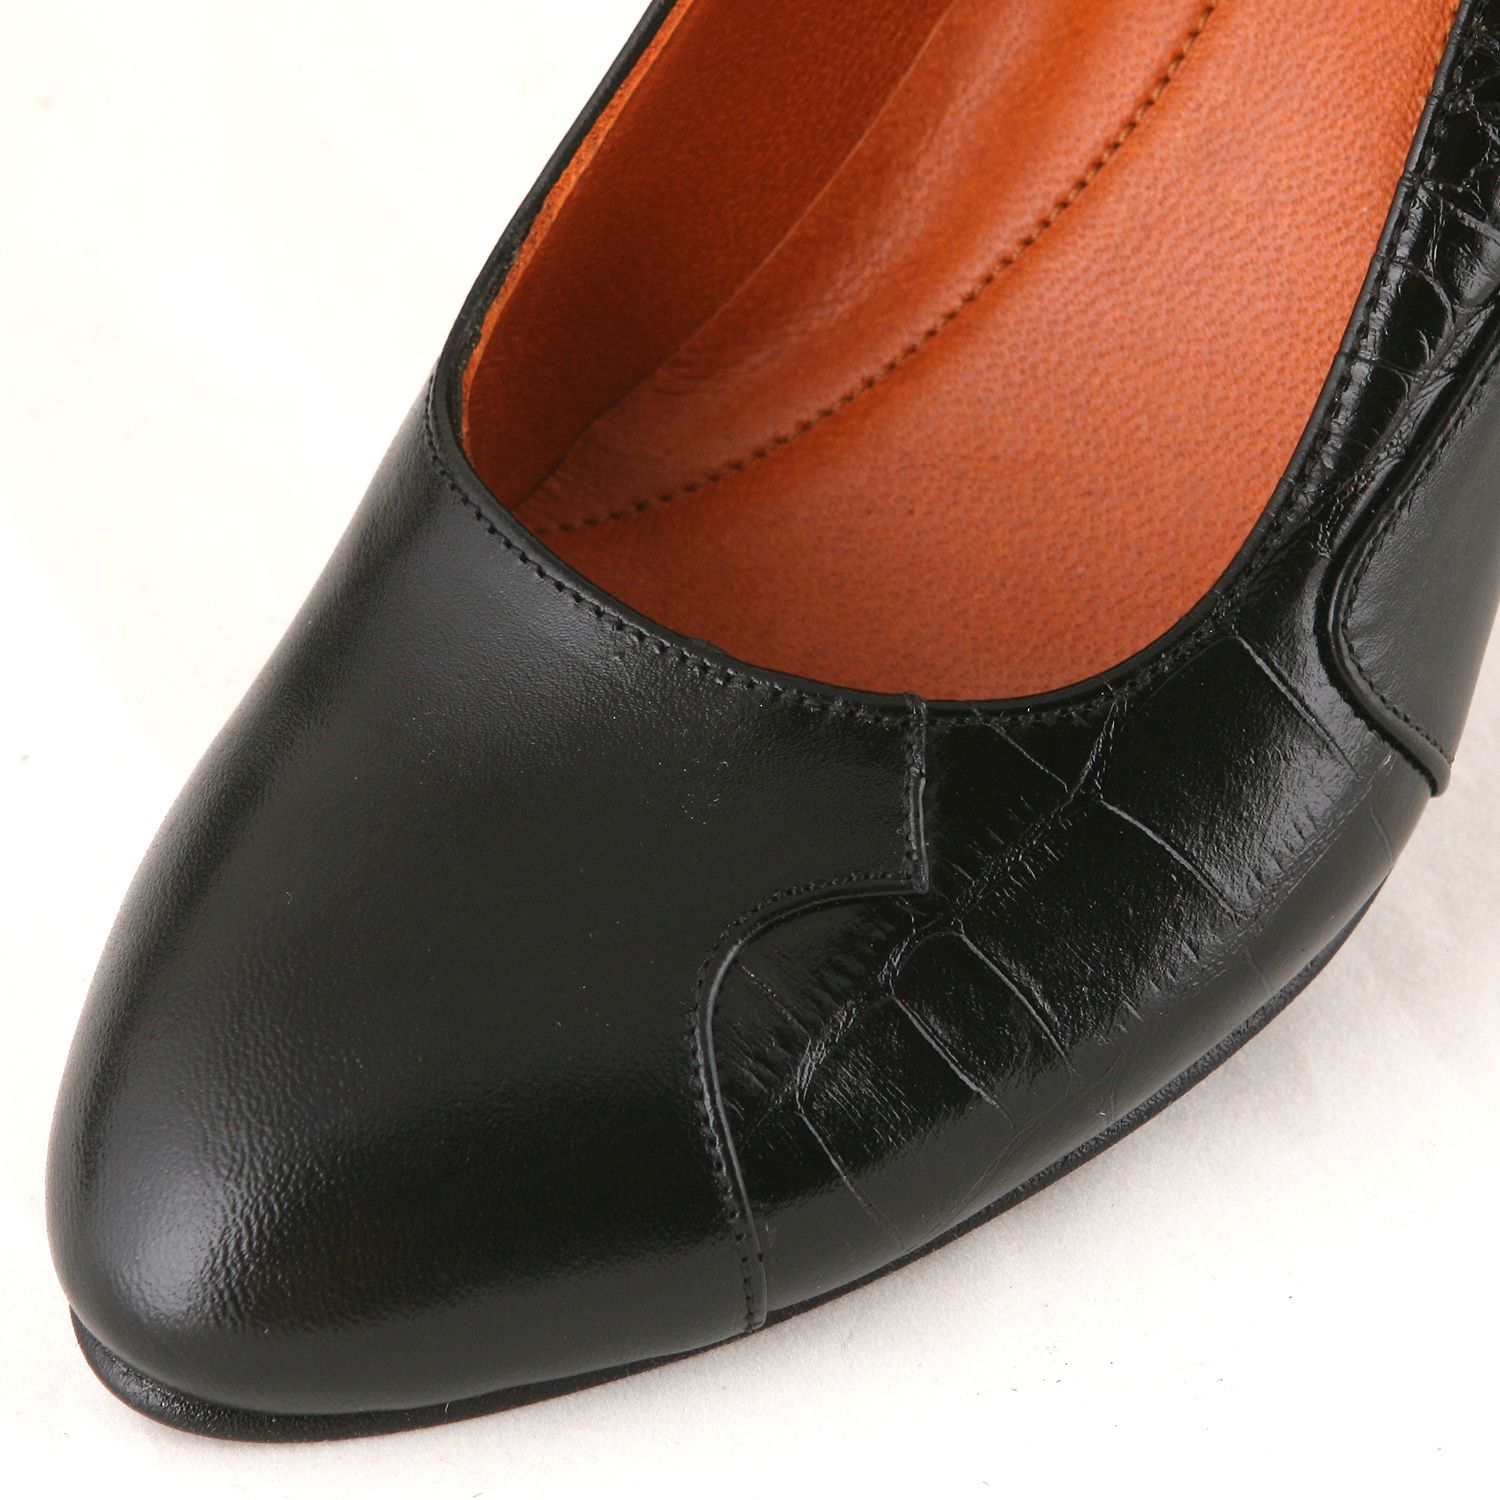 ست کیف و کفش زنانه چرم یلسان مدل دلسا کد ANA-GC-904-msk -  - 11